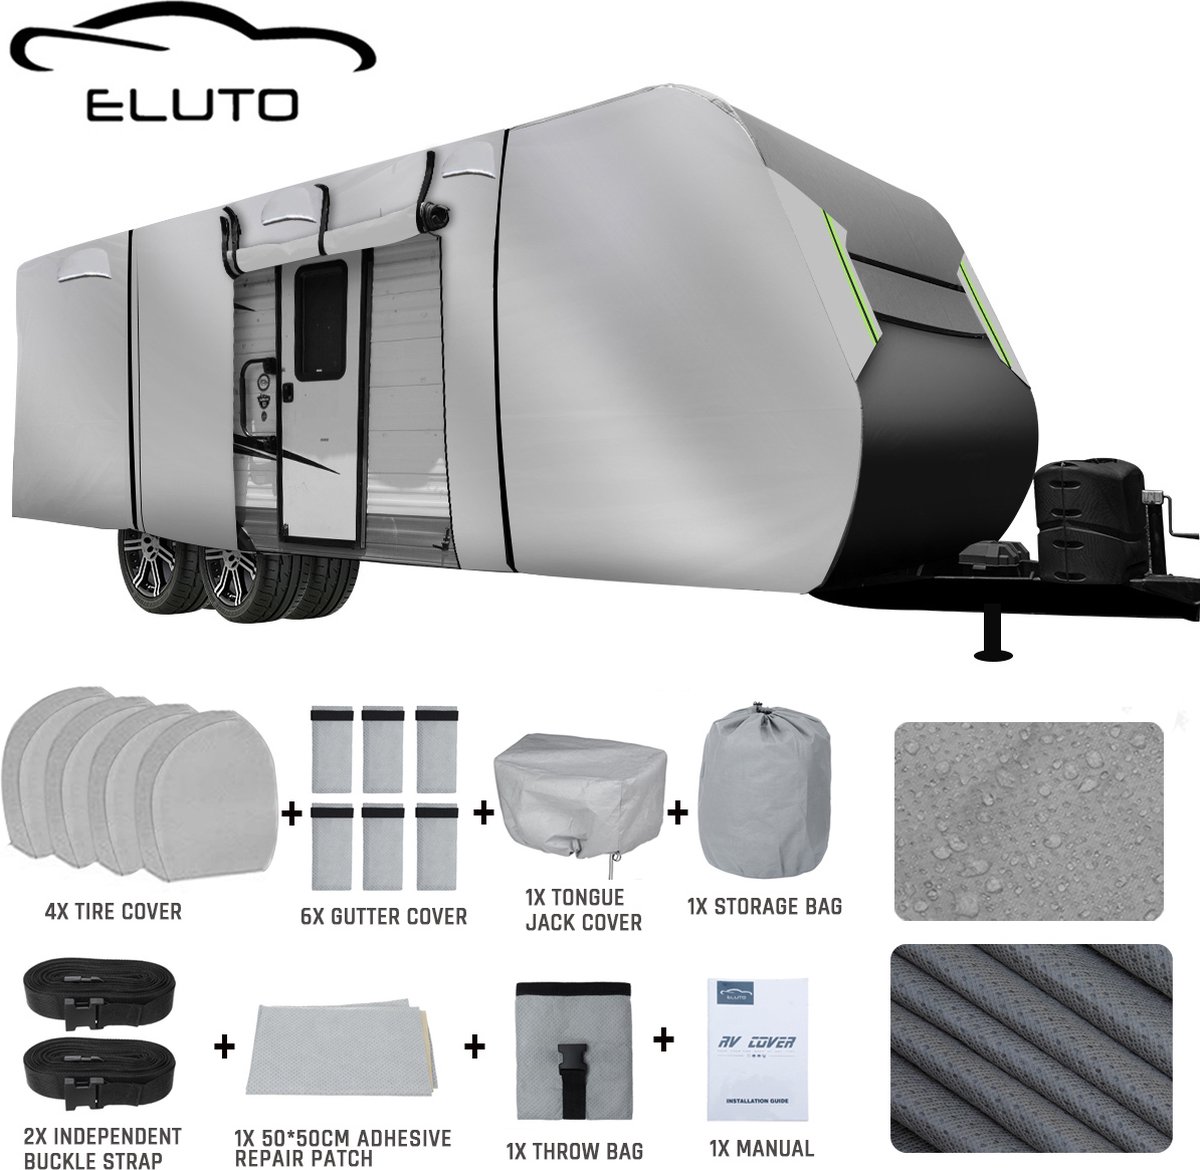 ELUTO Caravanhoes 549*267*274 CM - Waterdicht, UV-bescherming, sneeuwbestendig - Grijs